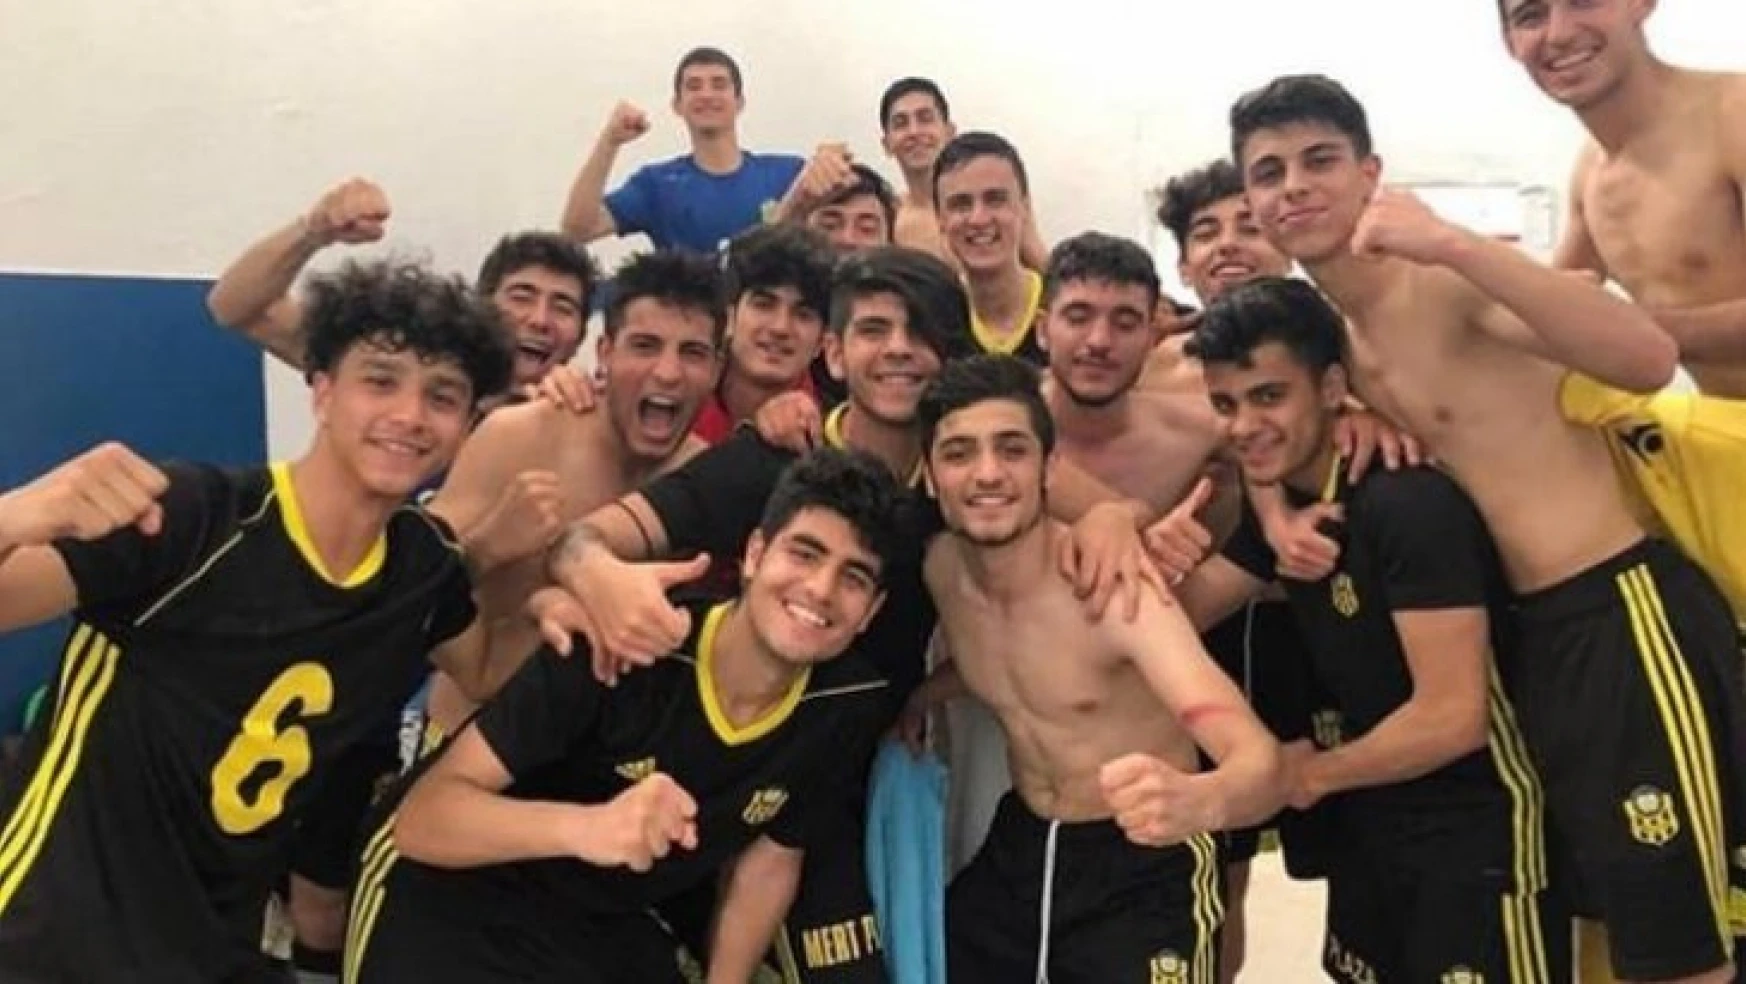 Evkur Yeni Malatyaspor U17 takımı umutlarını son haftaya taşıdı